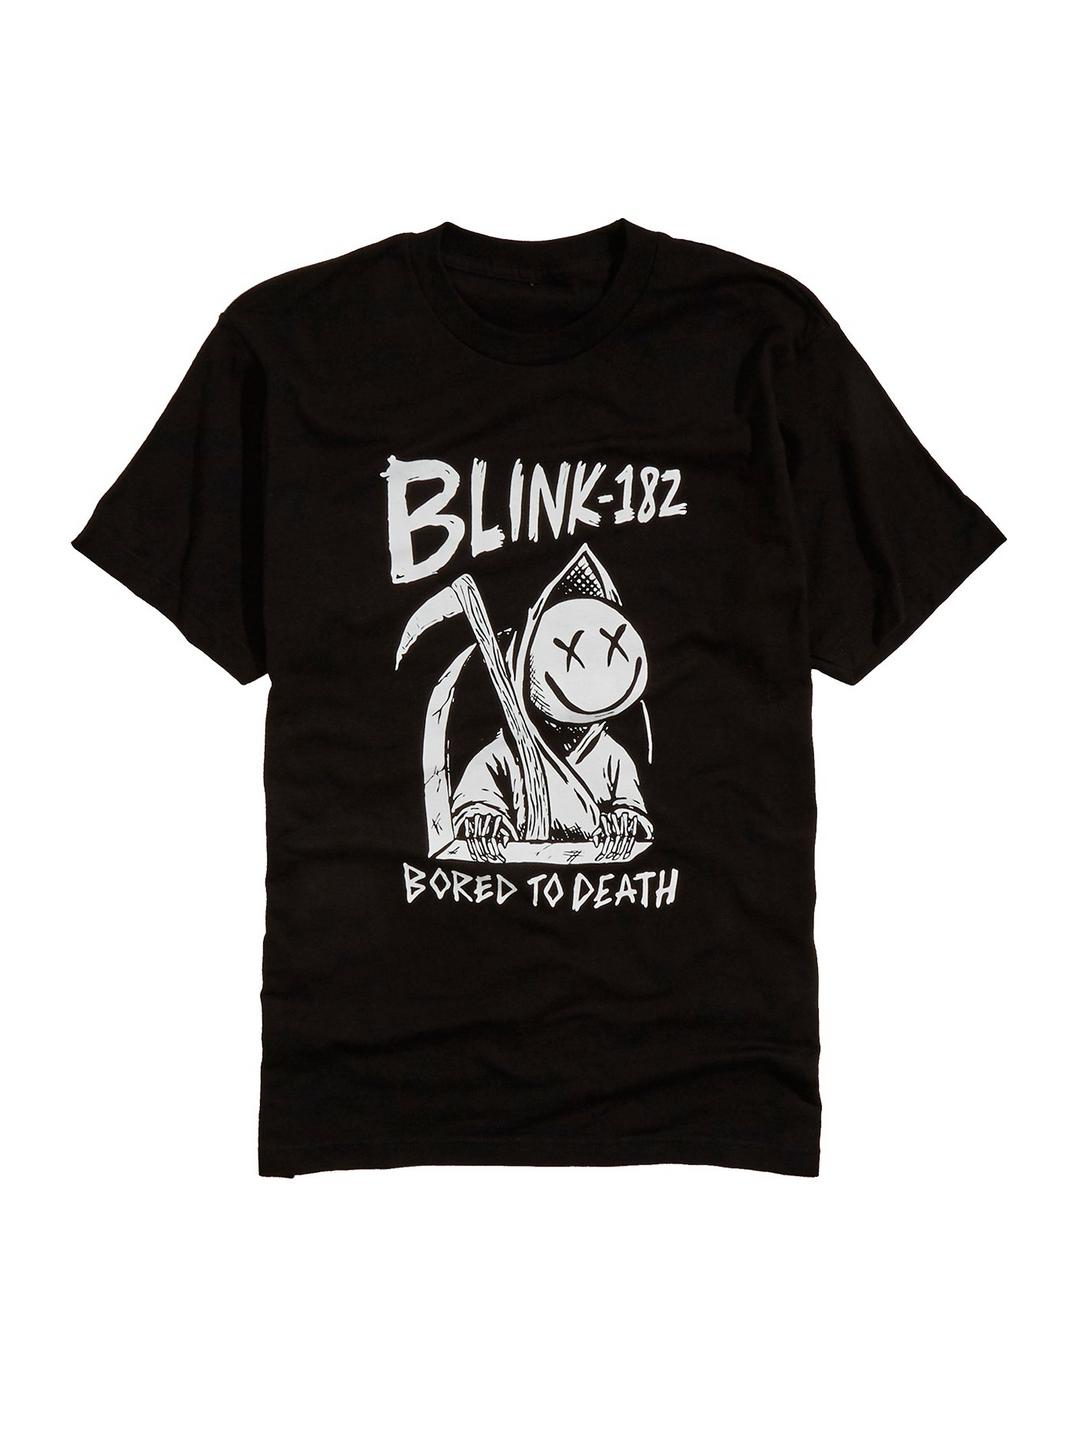 Blink-182 Bored To Death T-Shirt, BLACK, hi-res